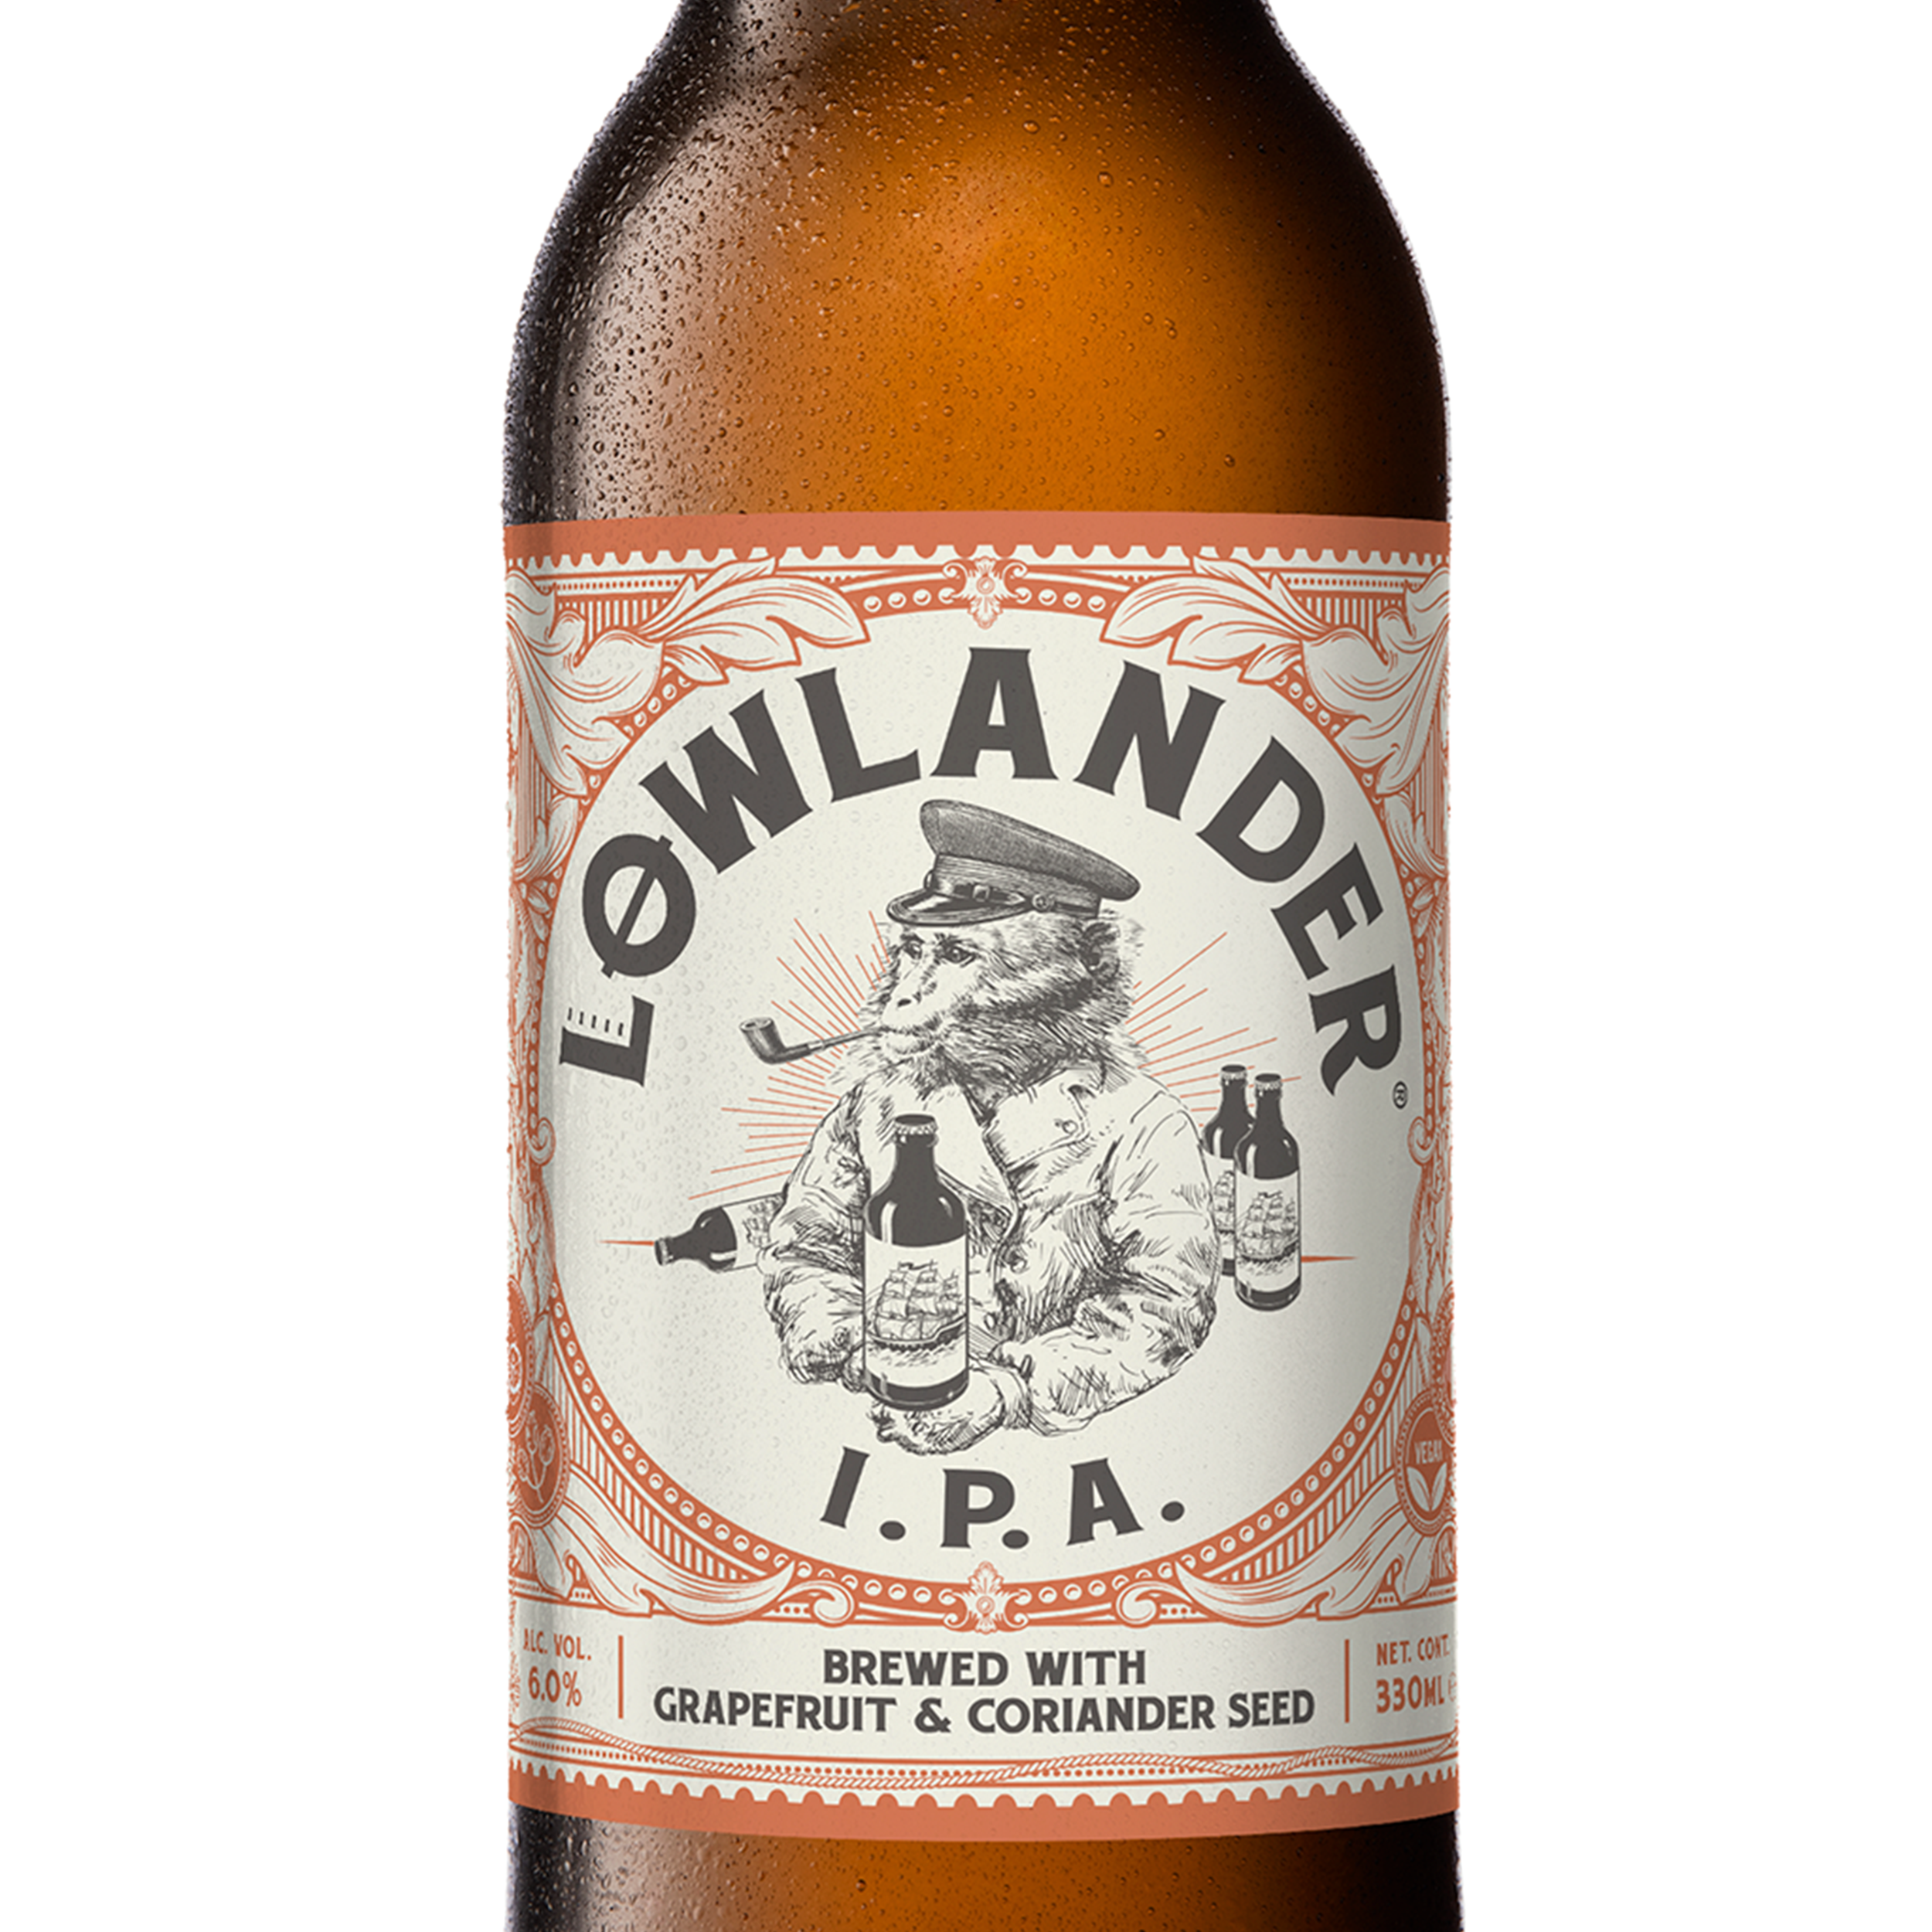 GO DRY NOT THIRSTY MET ONZE ALCOHOLVRIJE KROEGENTOCHT – Lowlander beer